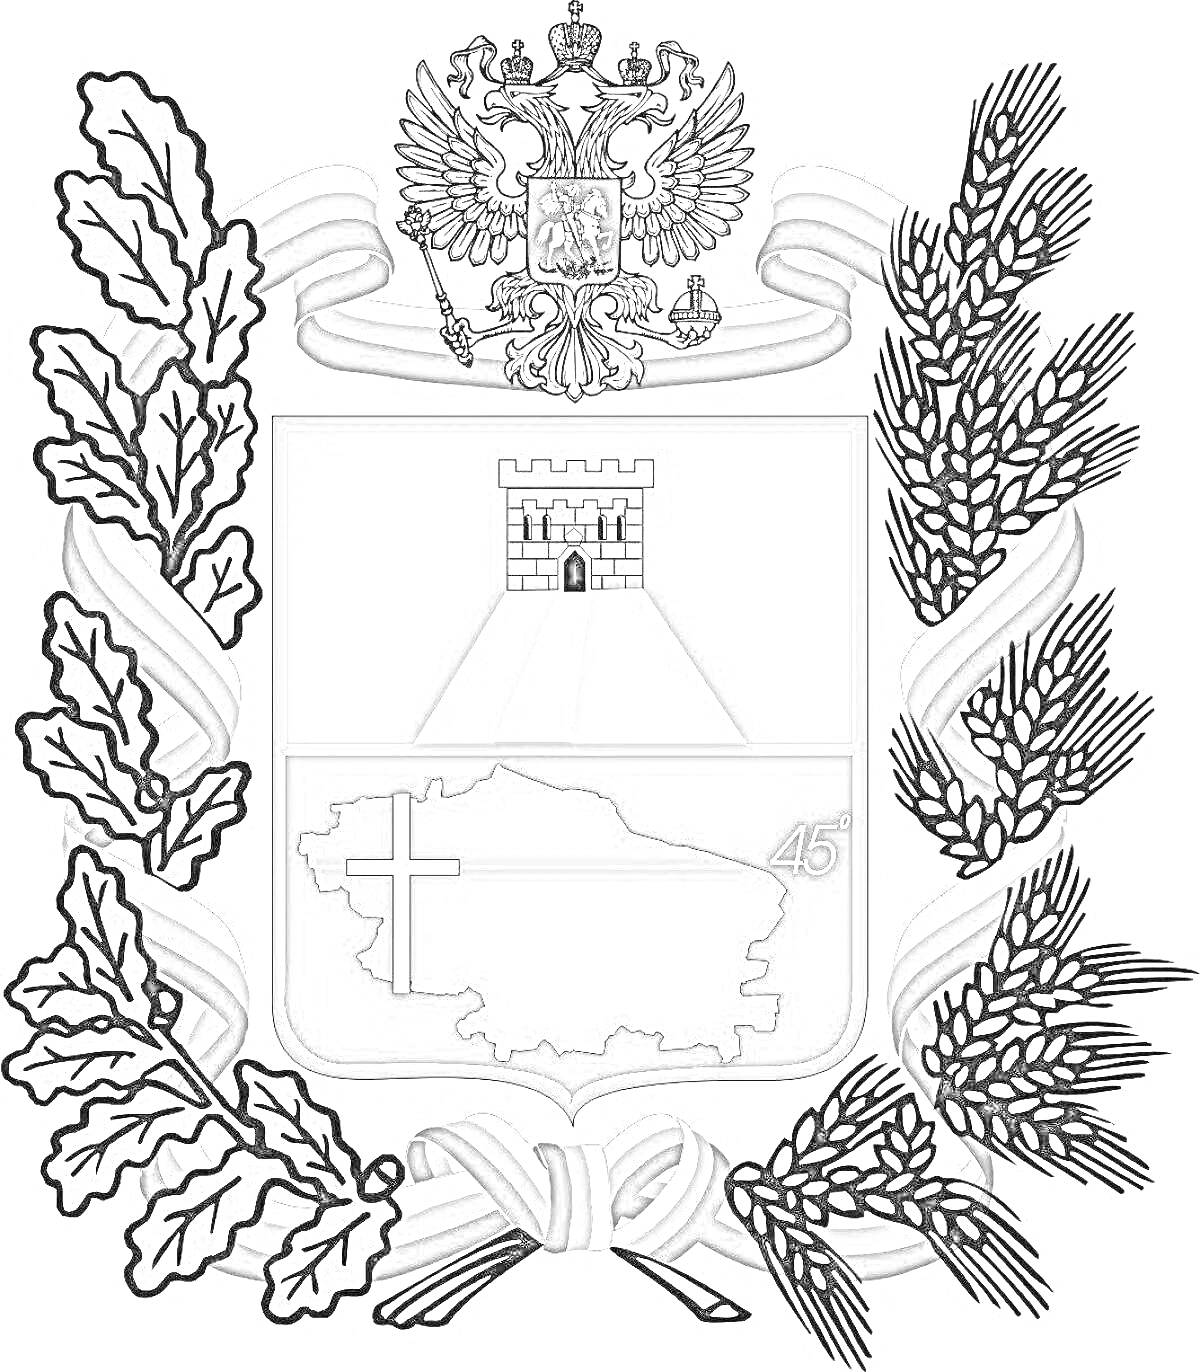 Раскраска Герб Ставрополя с башней, картой региона, крестом, символом 45-й параллели, дубовыми листьями, пшеничными колосьями и лентами